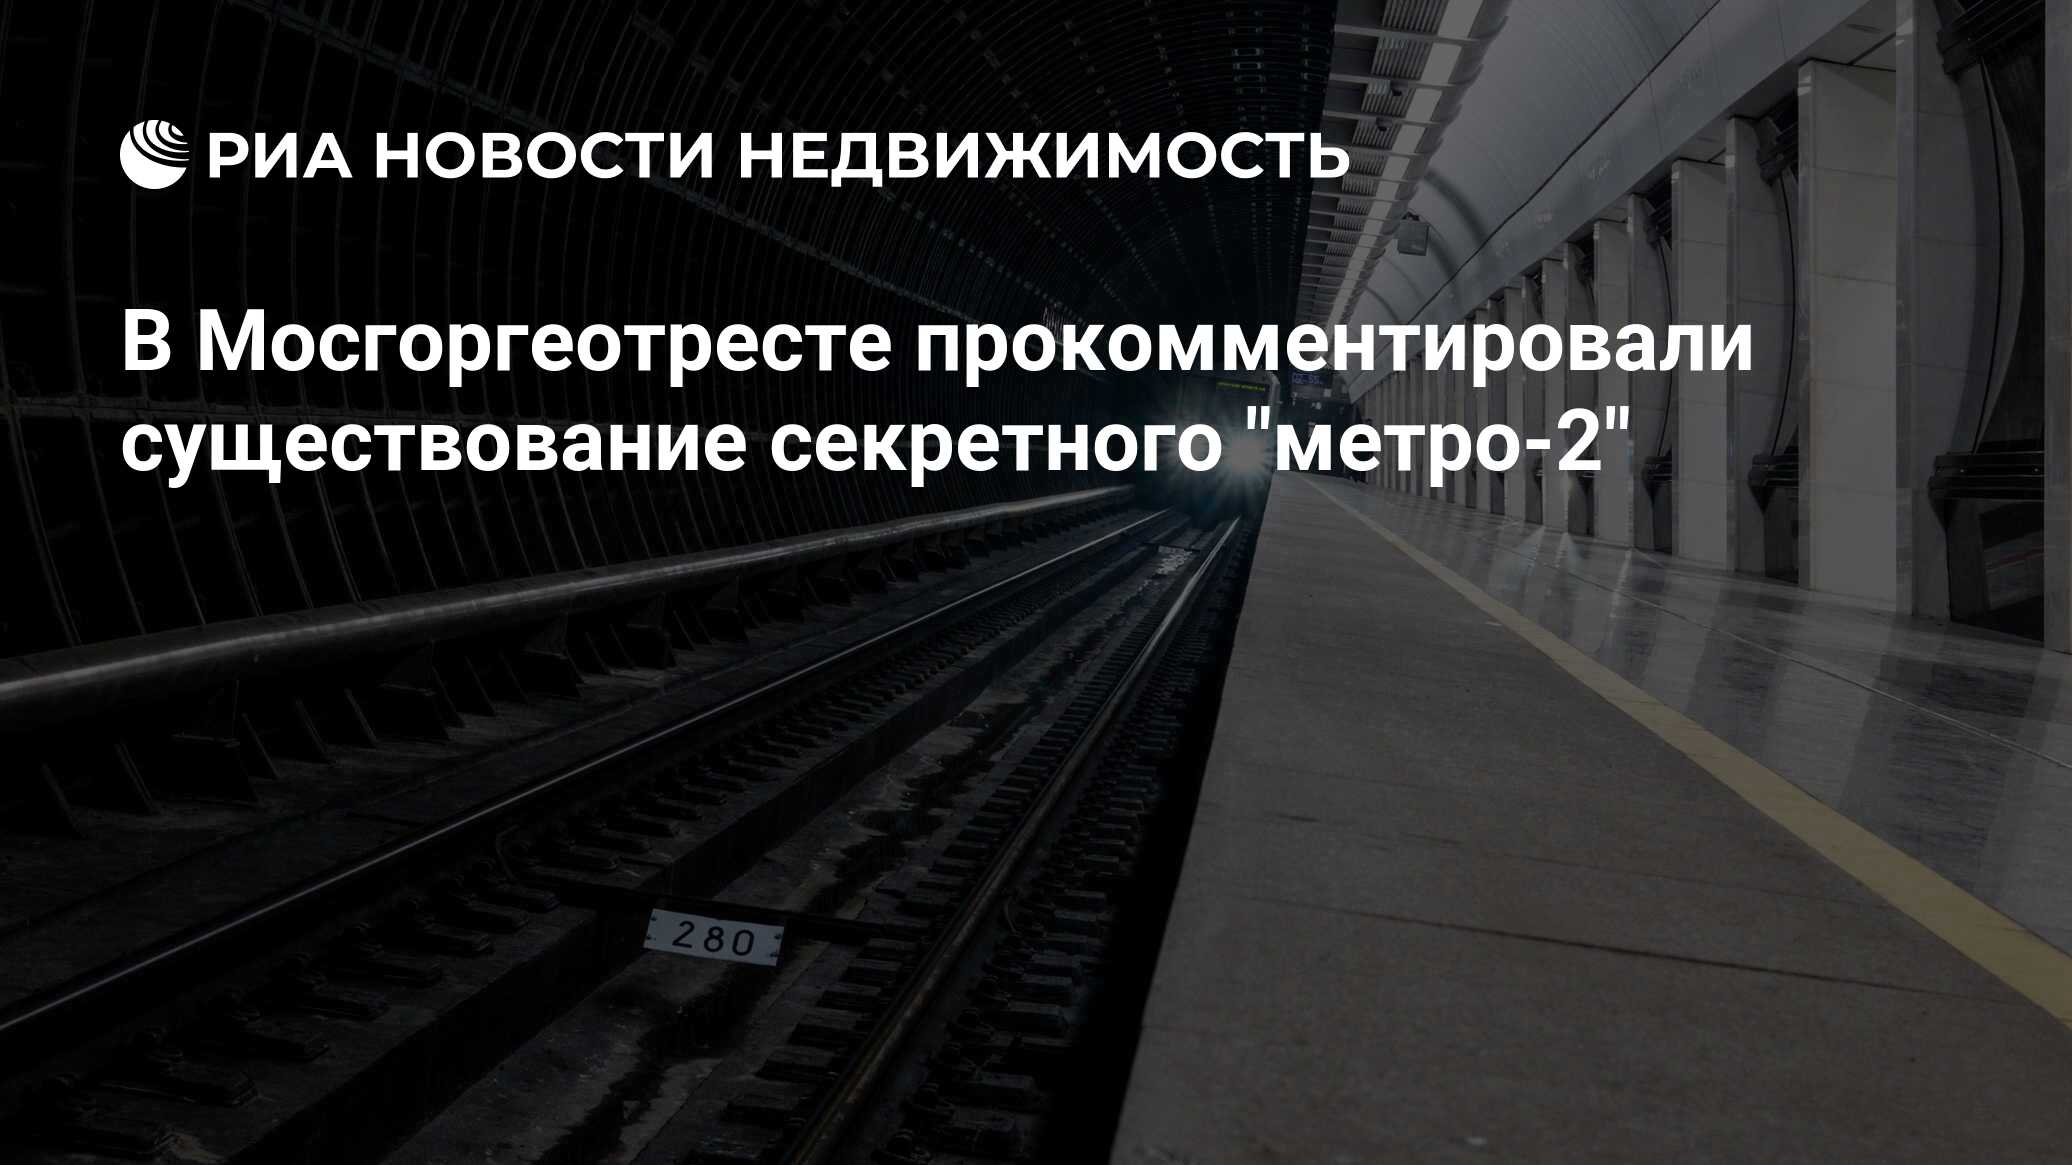 В Мосгоргеотресте прокомментировали существование секретного "метро-2"